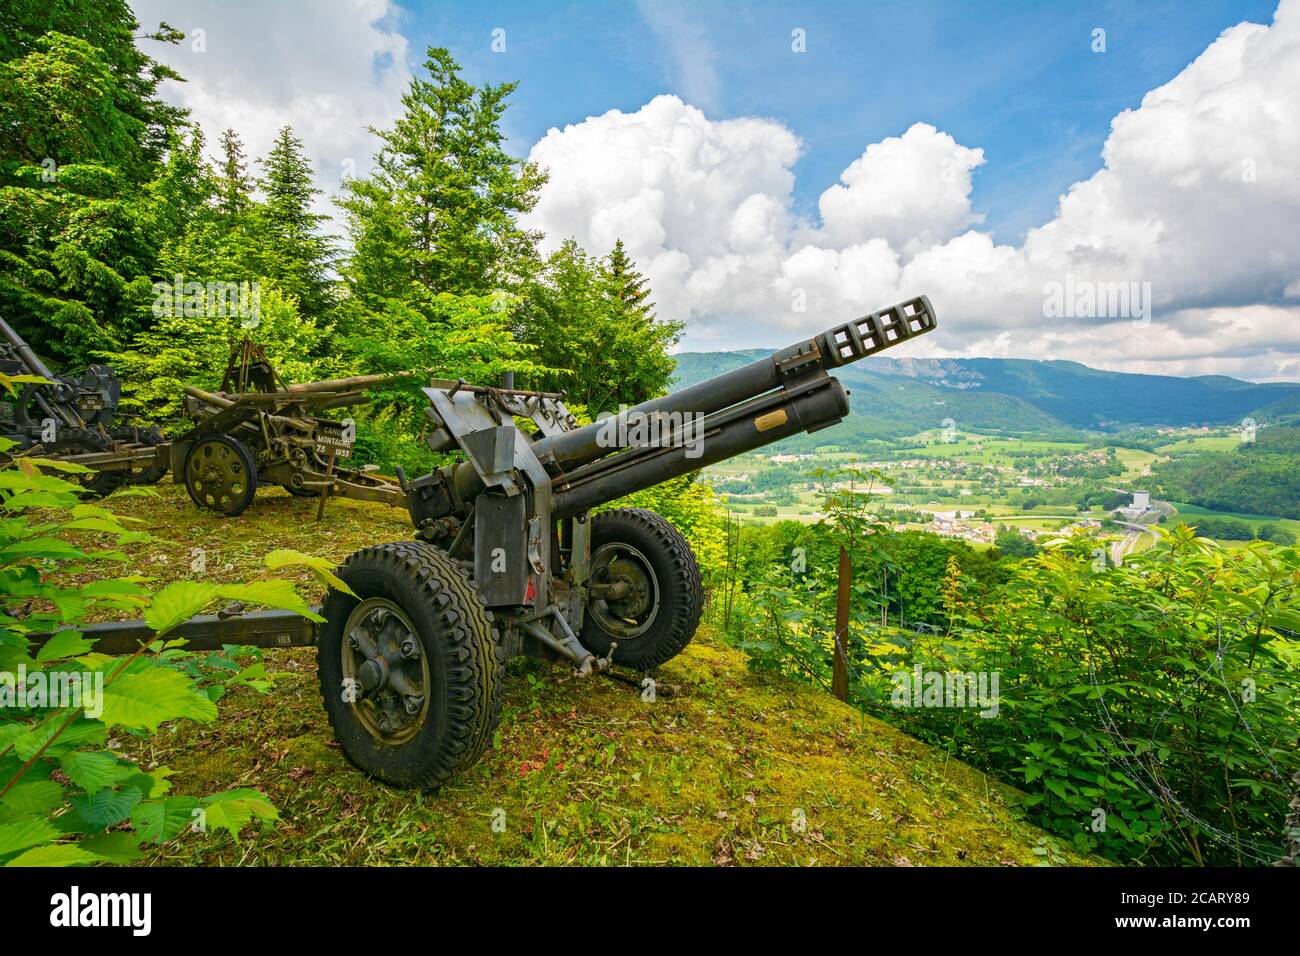 Suisse, canton de Vaud, Vallorbe, fort de la Seconde Guerre mondiale et position de l'artillerie face à la frontière française Banque D'Images